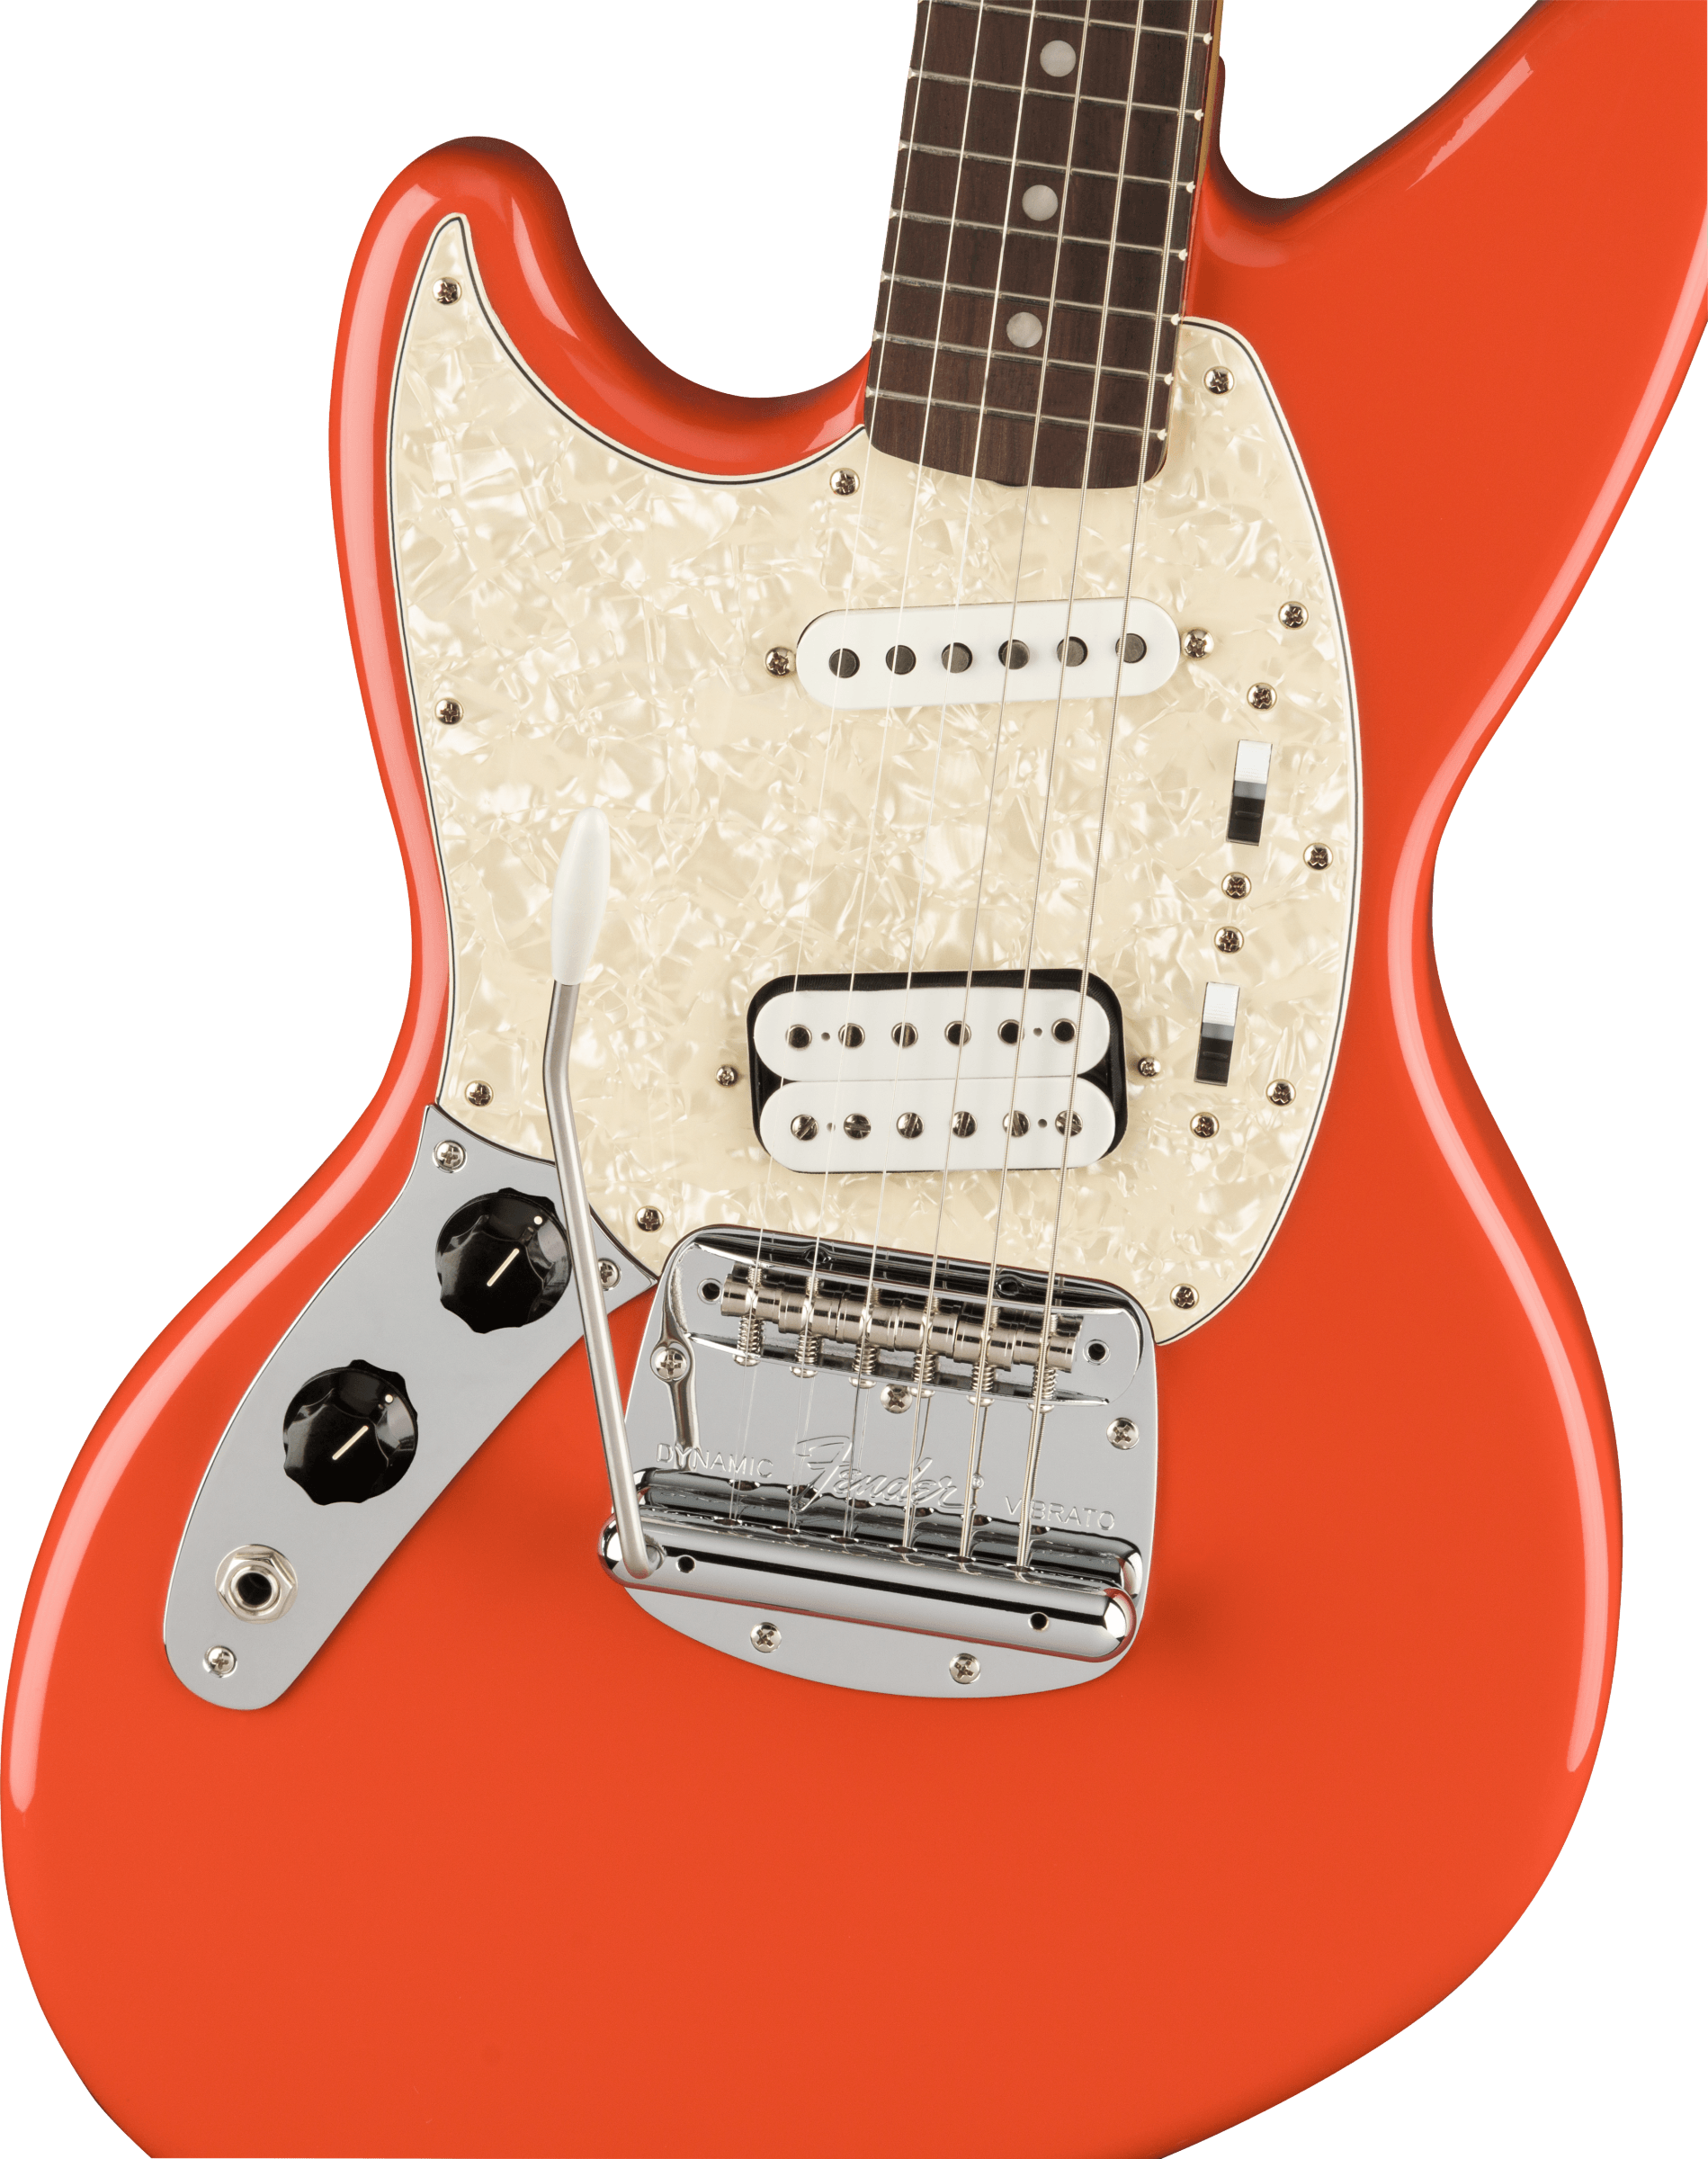 Fender Jag-stang Kurt Cobain Artist Gaucher Hs Trem Rw - Fiesta Red - Guitarra electrica para zurdos - Variation 2